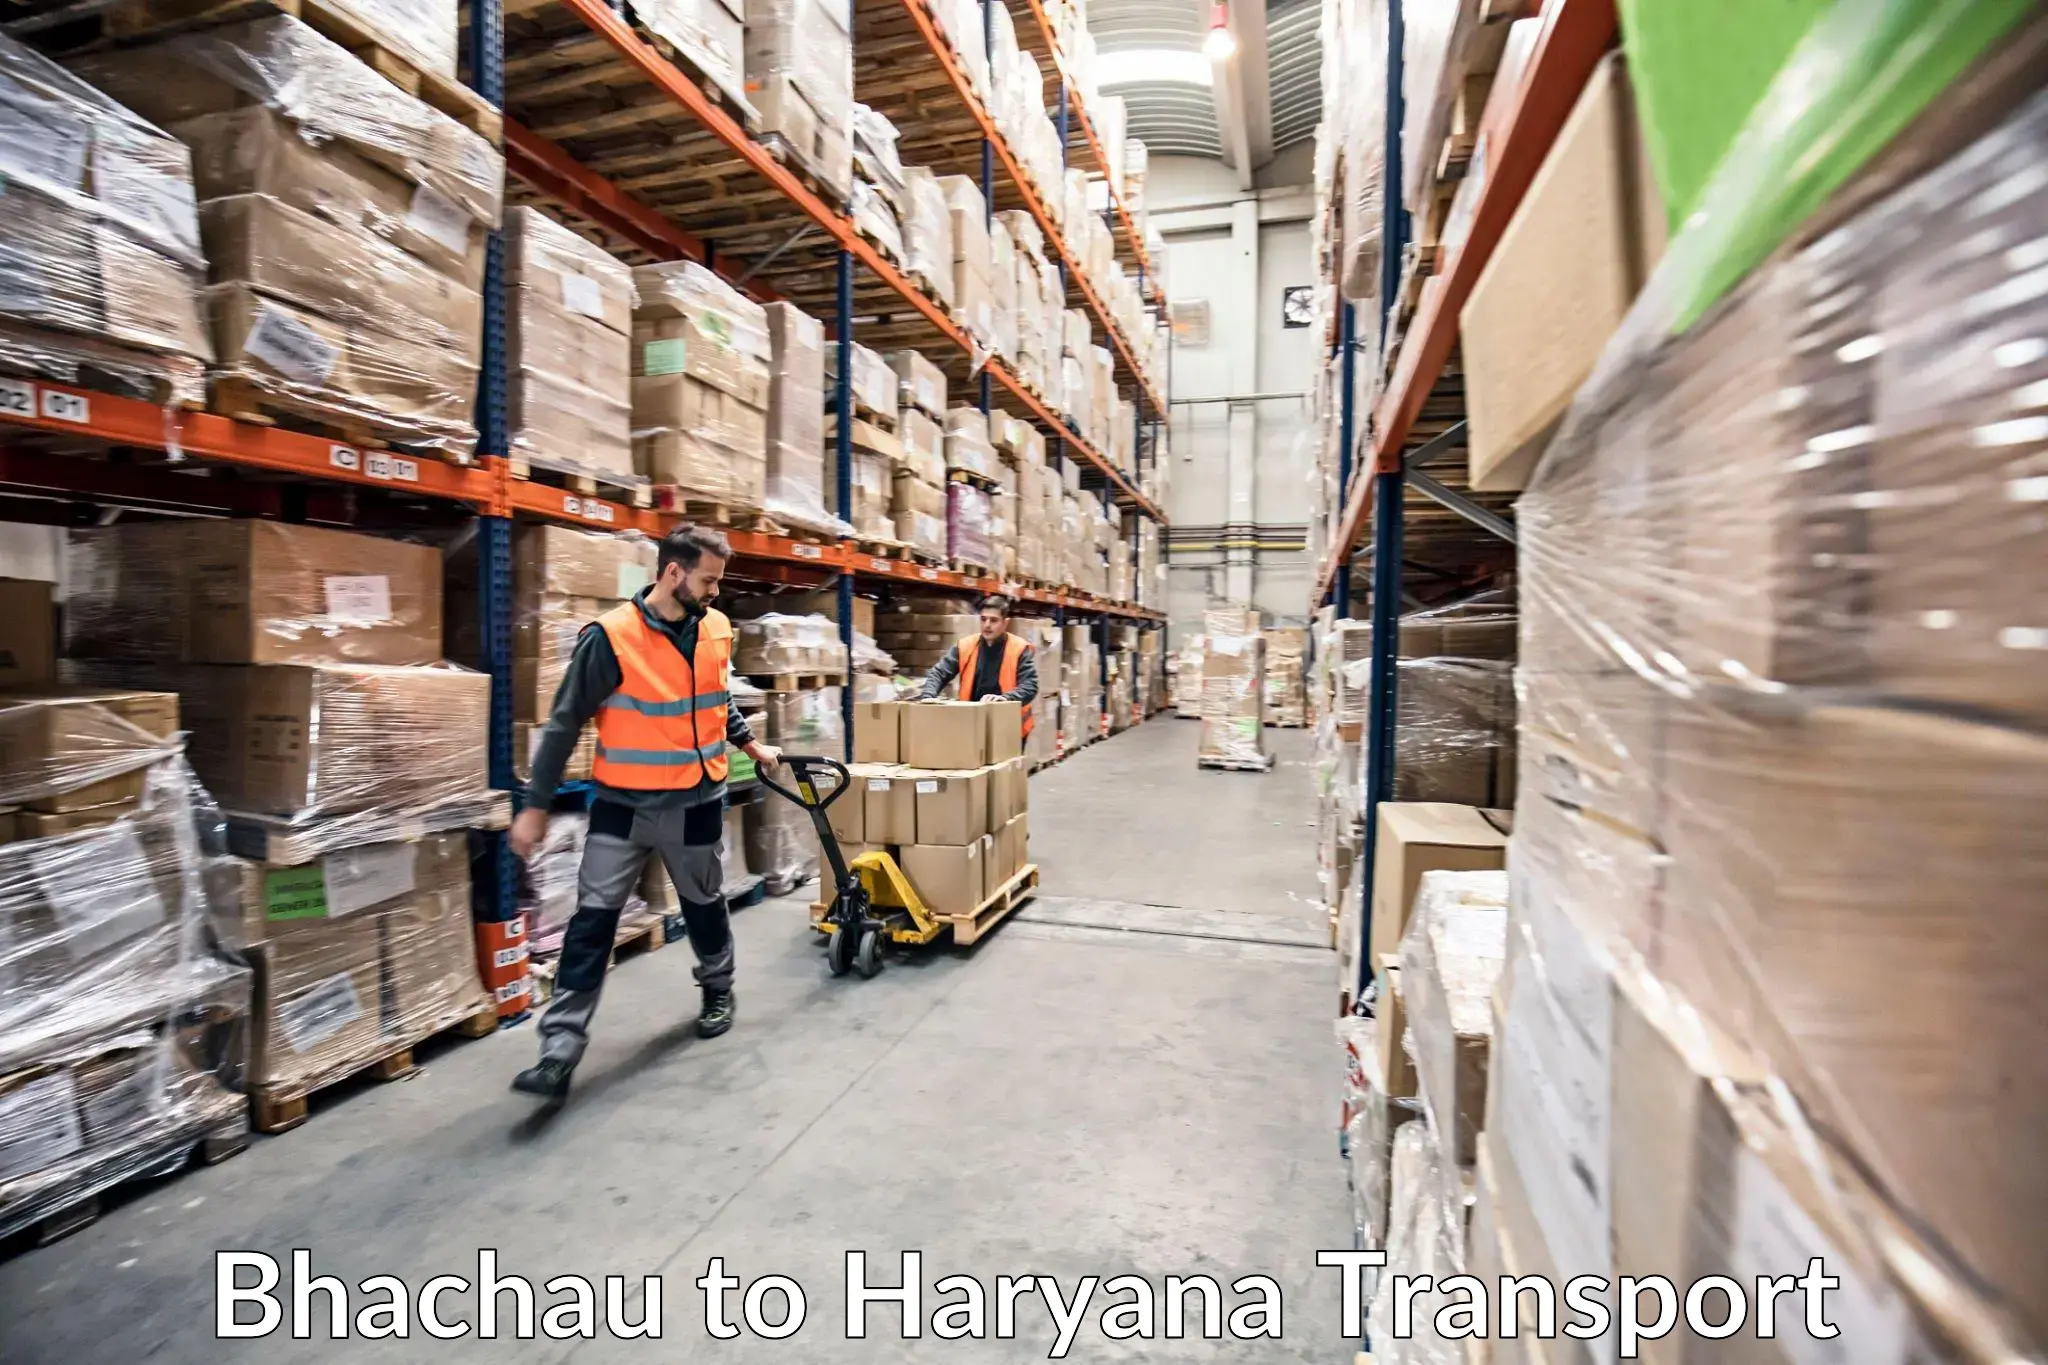 Shipping partner Bhachau to Kurukshetra